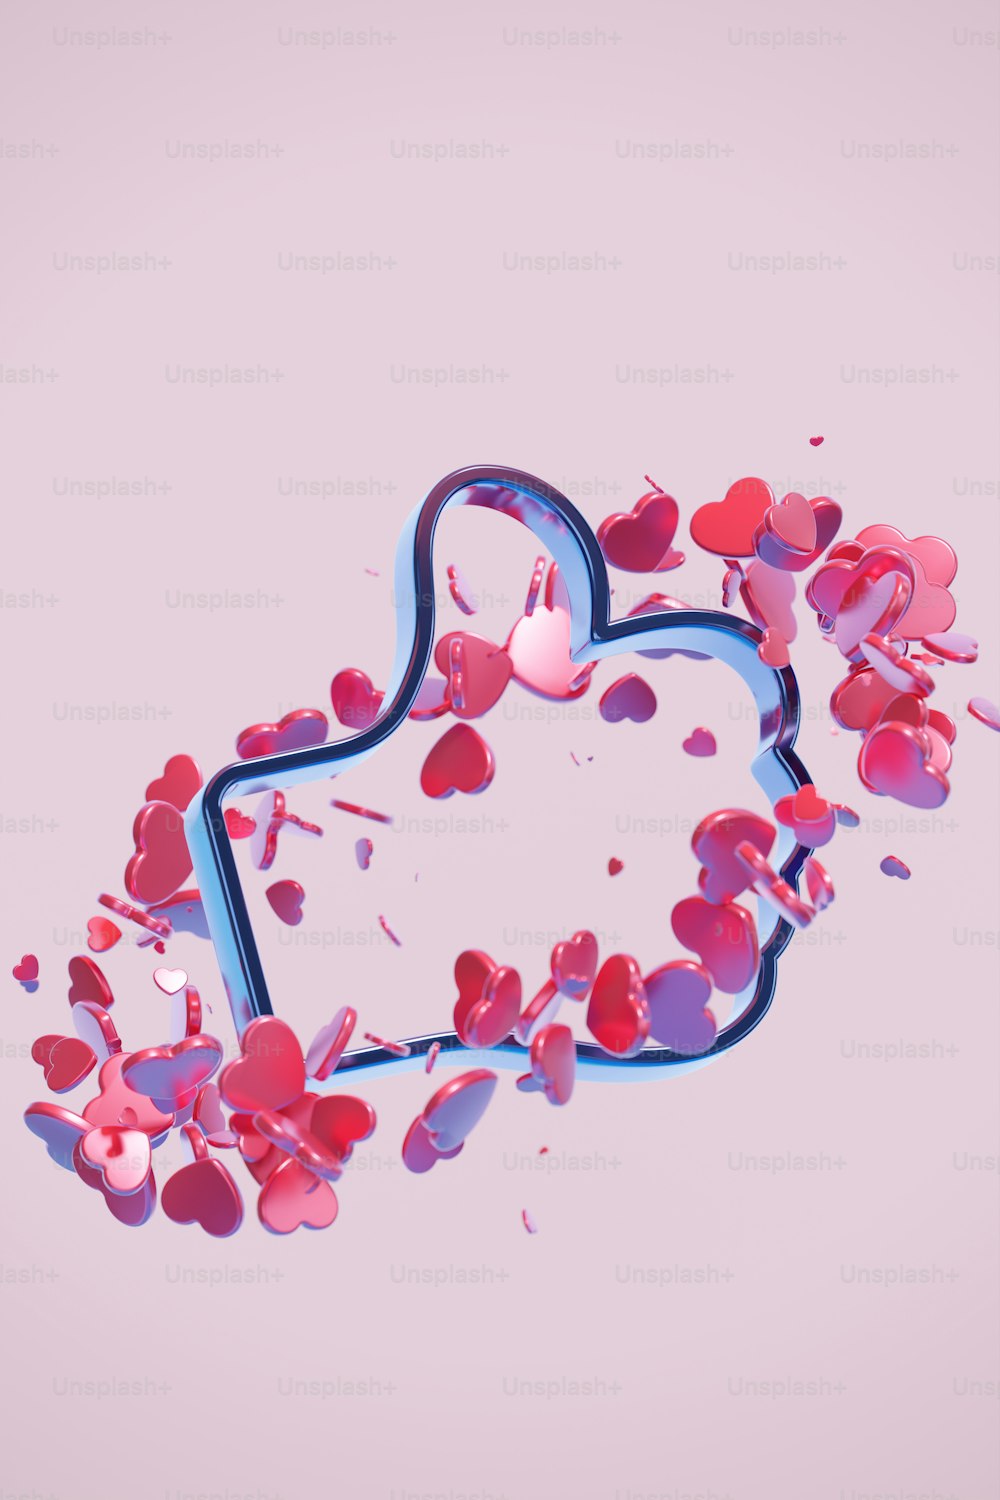 Una imagen de un objeto en forma de corazón sobre un fondo rosa